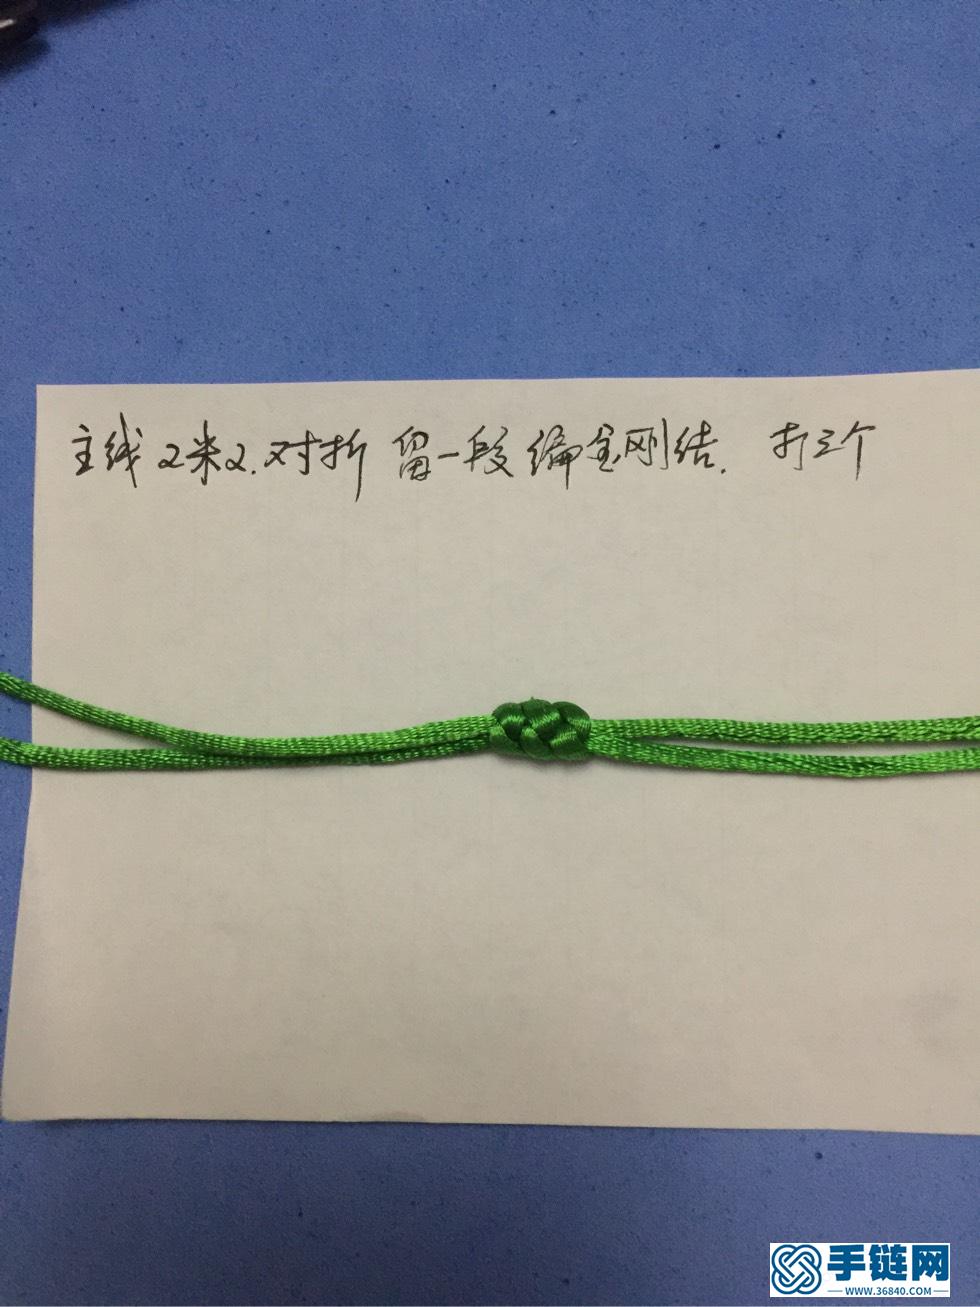 小花手链，引用老师们的基础结，创作一条小花手链